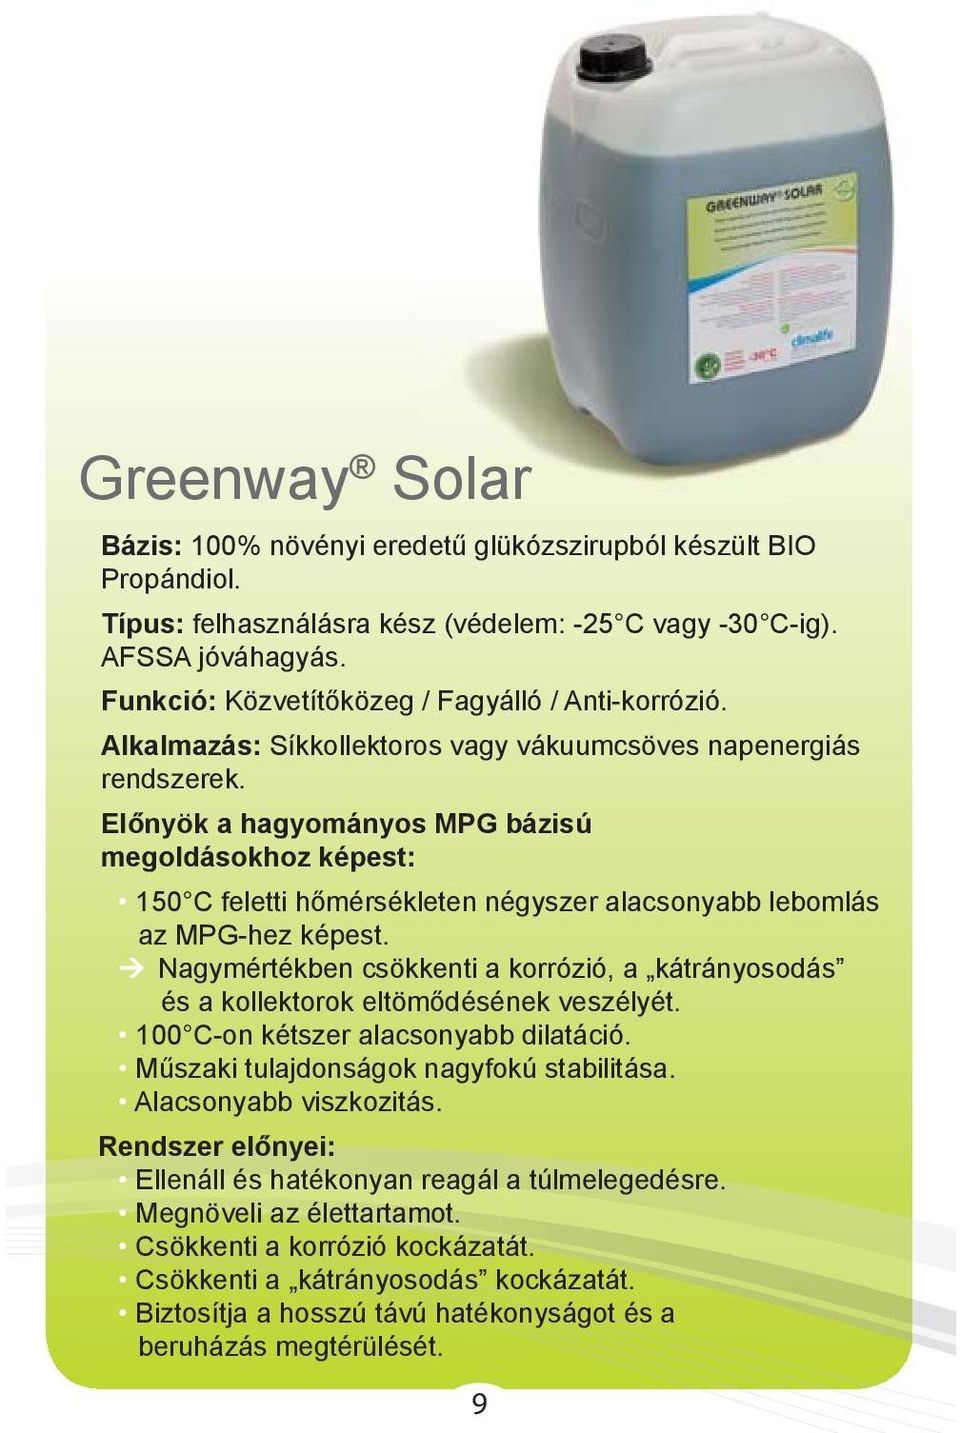 Közvetítőközegek napenergiás rendszerekhez. Útmutató a helyes gyakorlathoz  - PDF Ingyenes letöltés